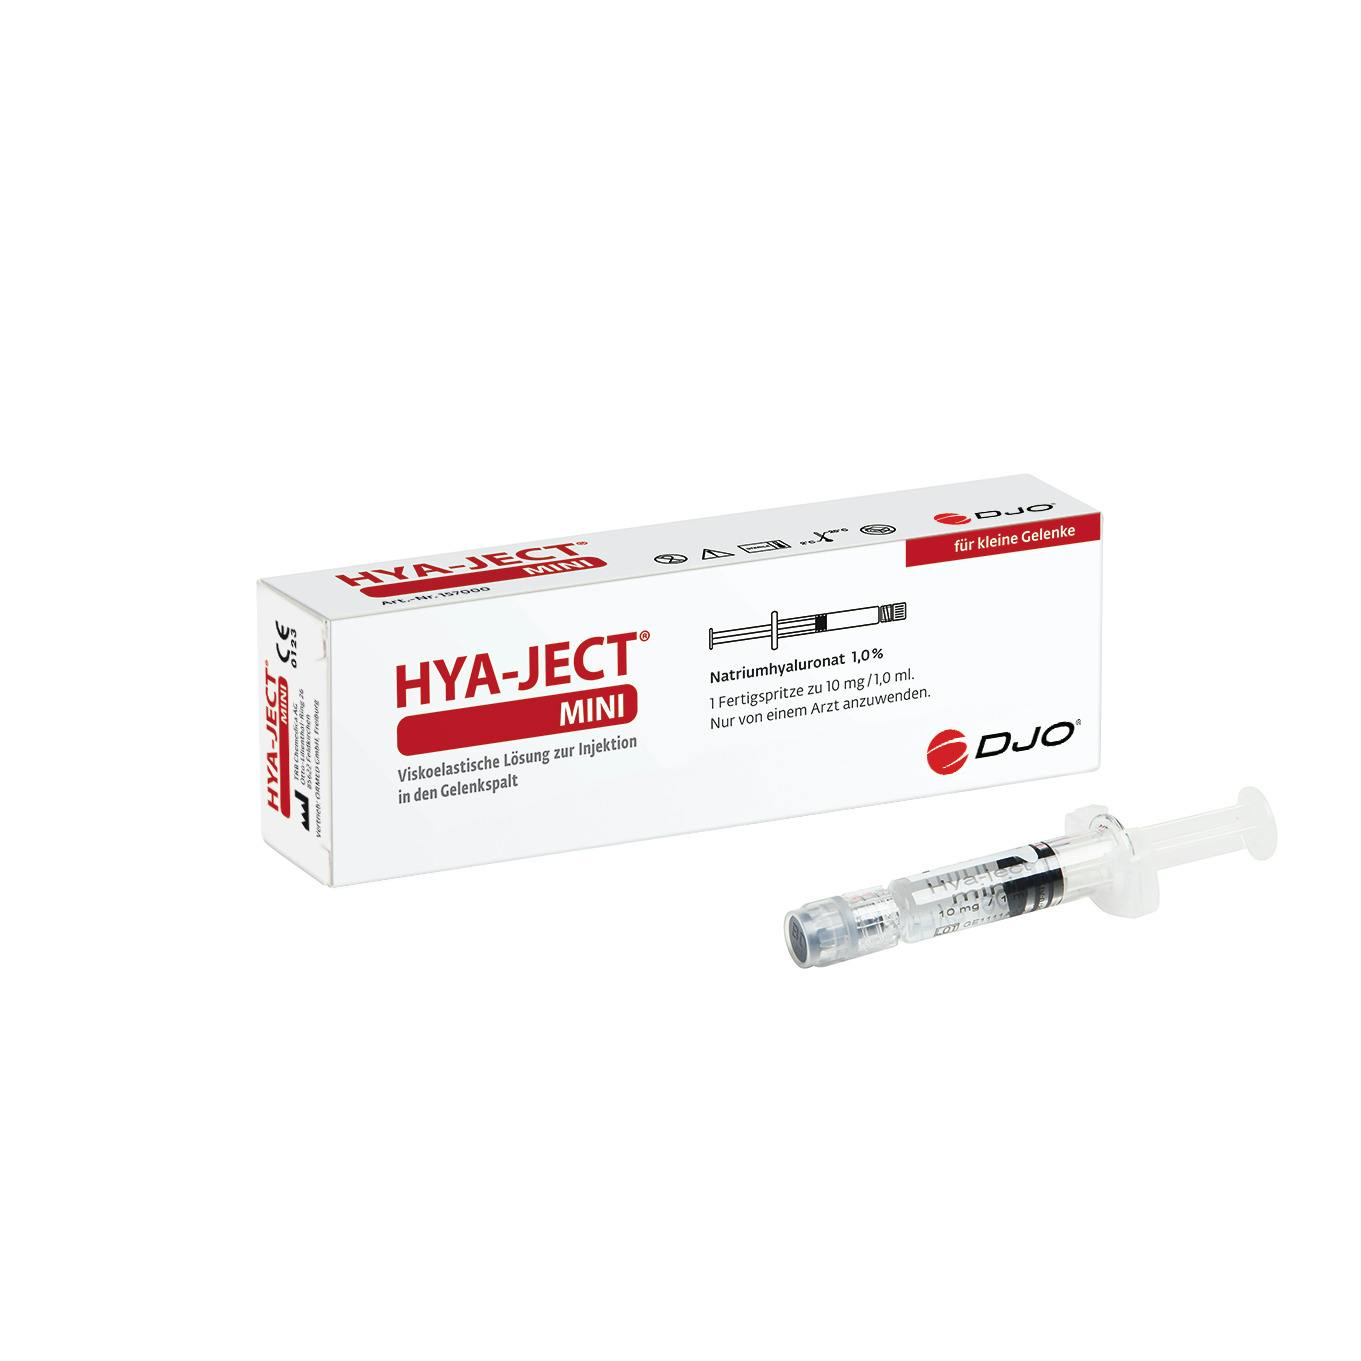 Produktbild Hyaluronsäure zur intraartikulären Arthrosebehandlung kleiner Gelenke, 1 Fertigspritze, 10mg:1ml mit Spritze